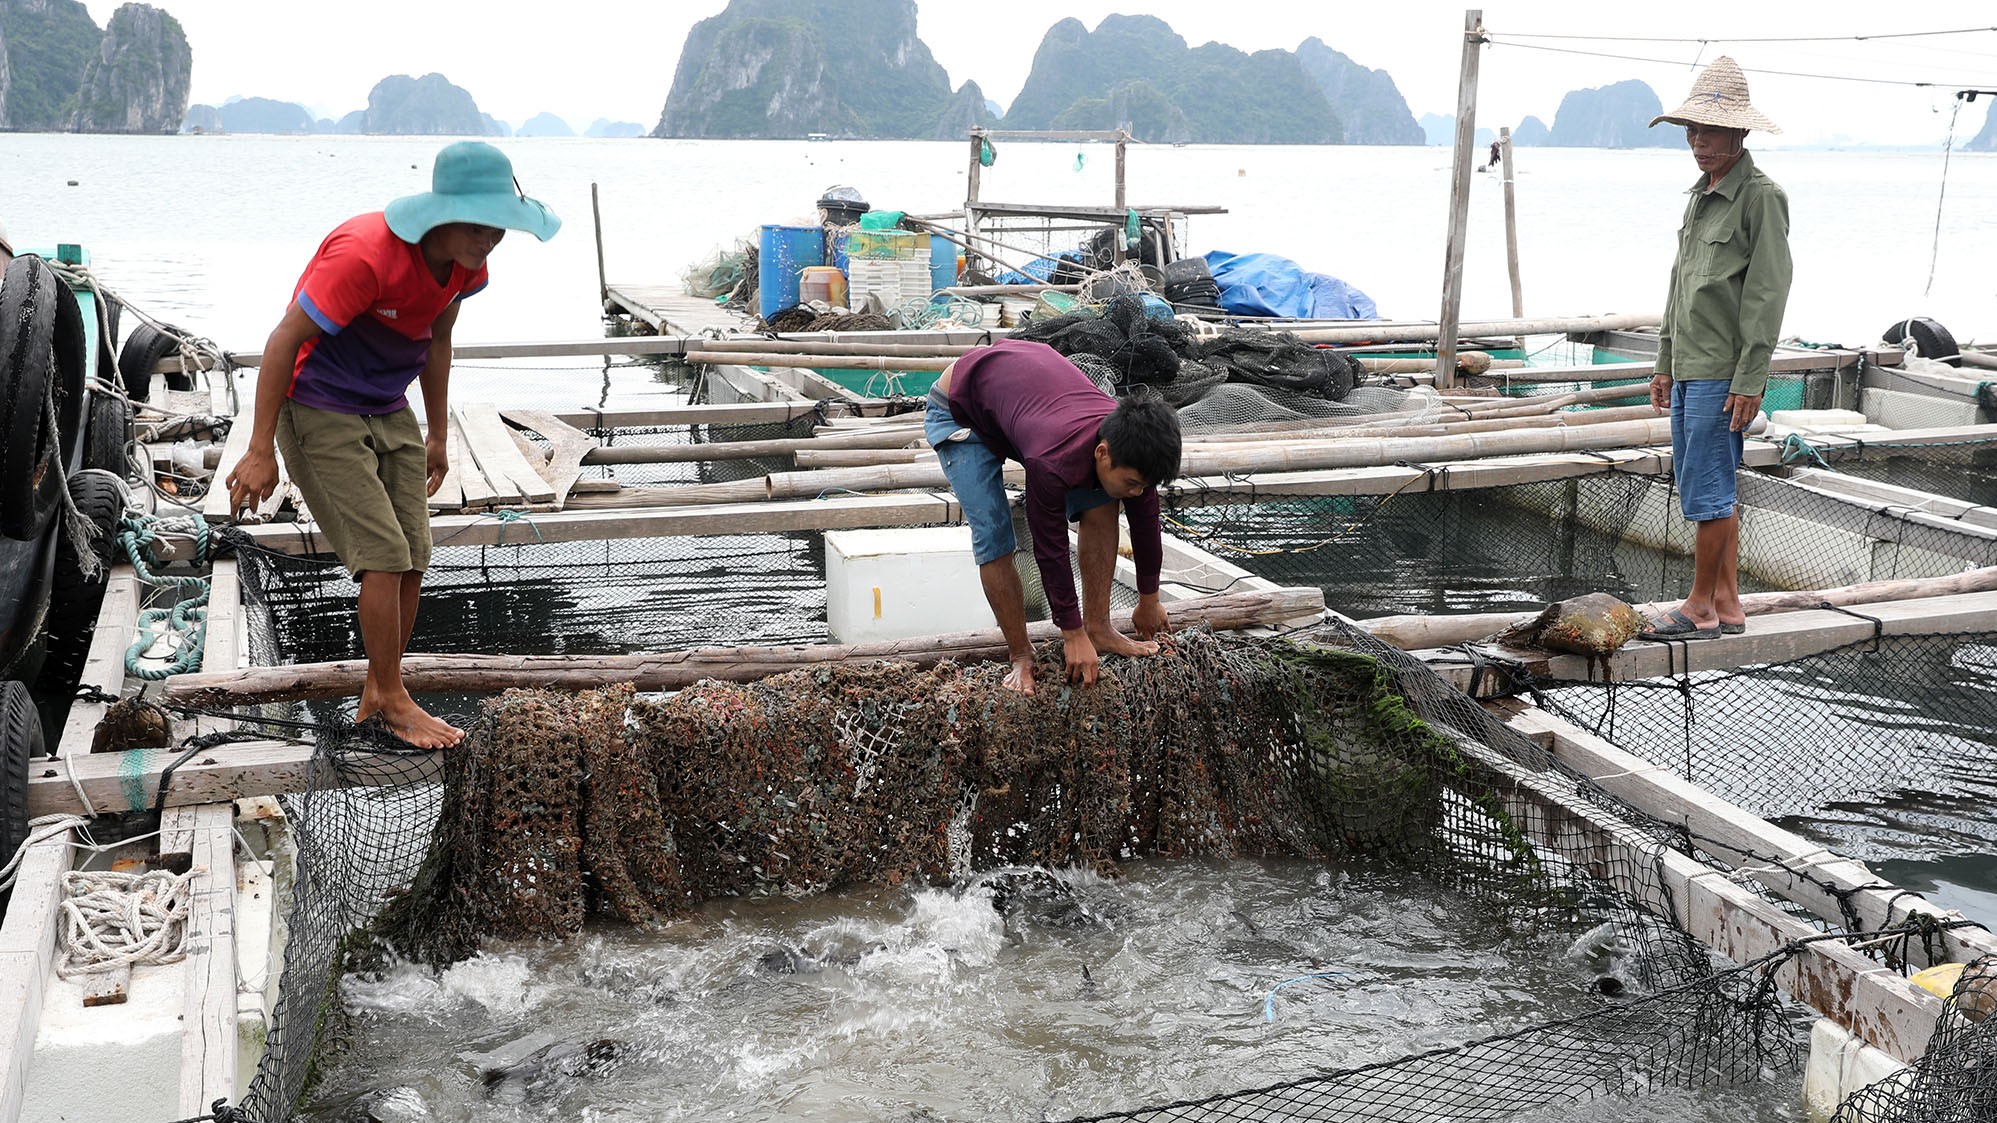 Quảng Ninh: Công ty than mua gần 5 tỉ đồng cá song cho nhân viên ăn rằm - Ảnh 1.